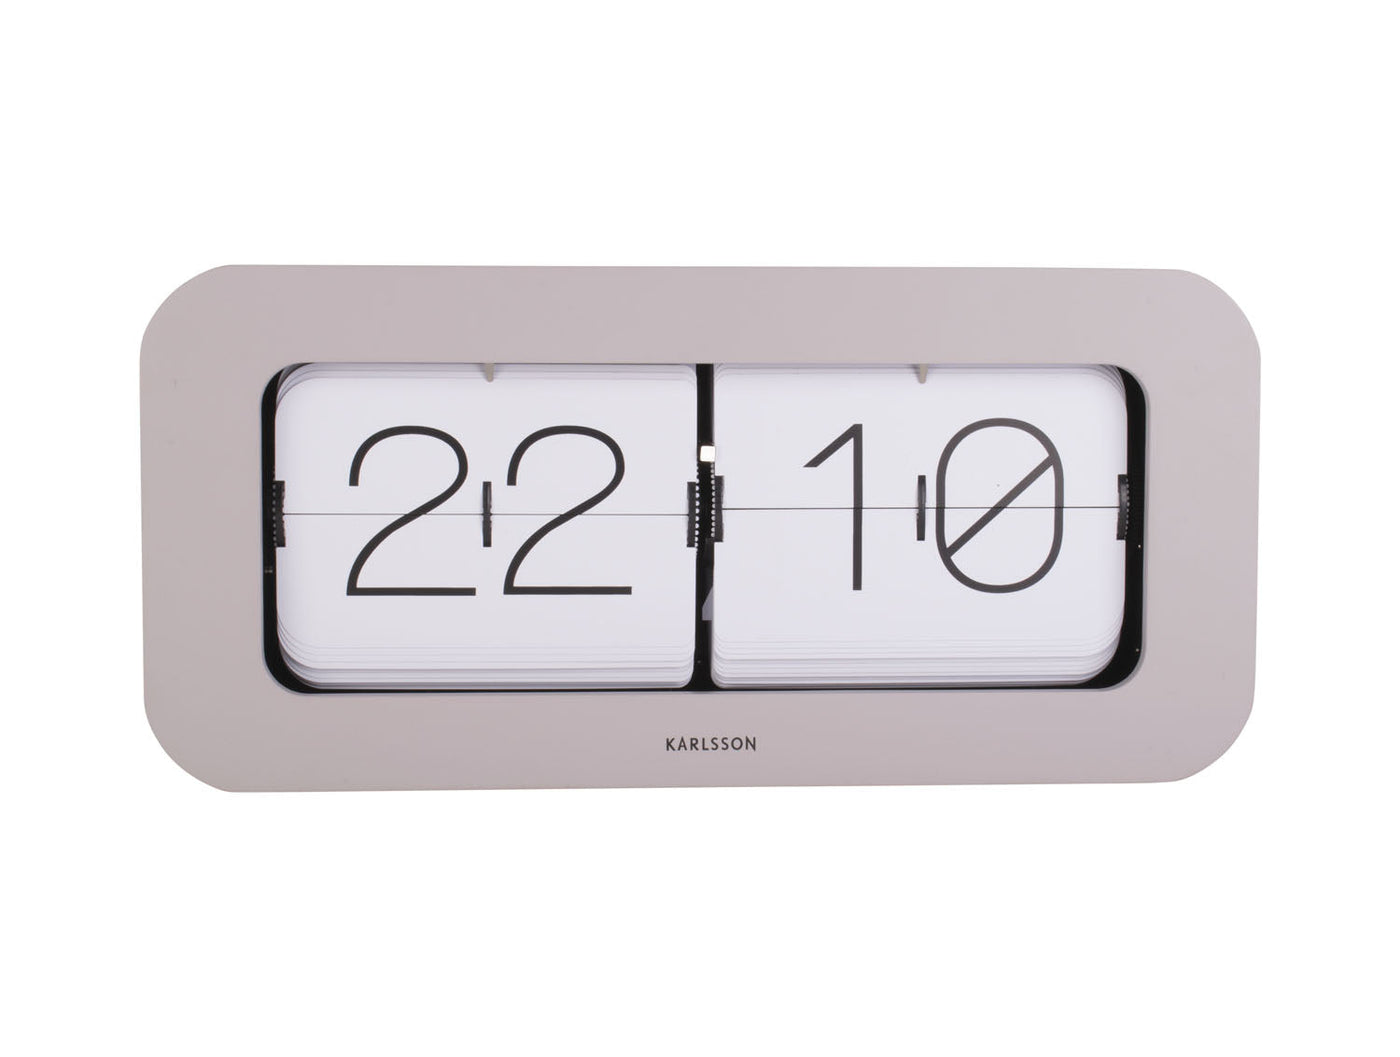 Karlsson Matiz Flip Flap Desk Or Wall Clock Warm Grey - timeframedclocks